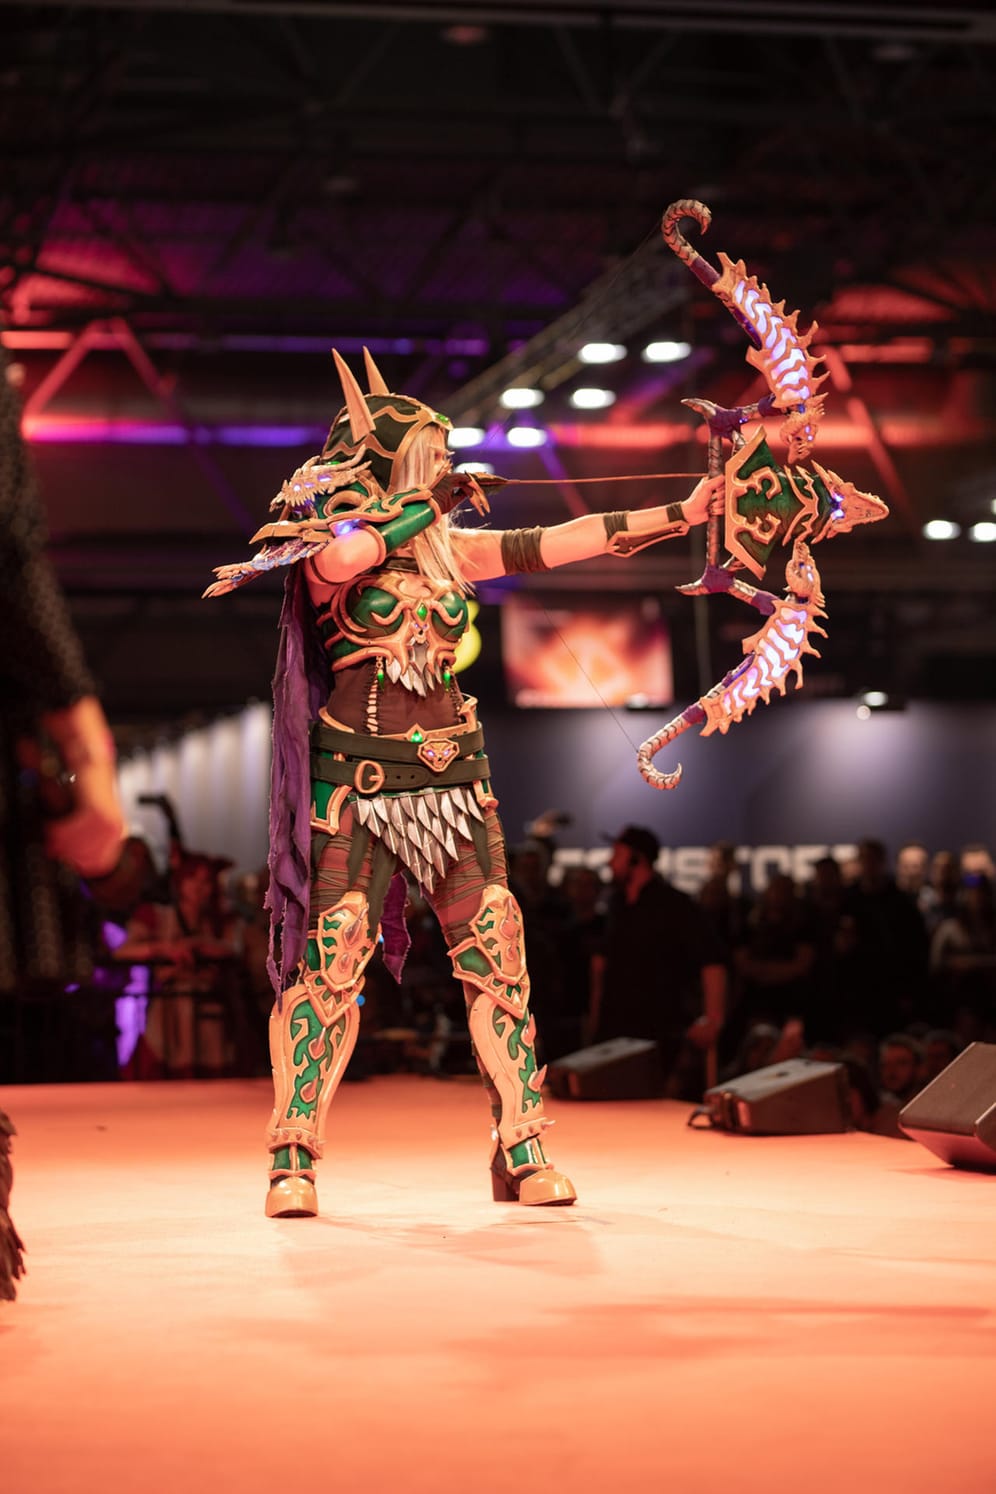 Mita nahm als Alleria Windläufer aus "World of Warcraft" am Costume Contest teil. Auch hier sind zahlreiche LEDs im Kostüm und im Bogen verbaut.